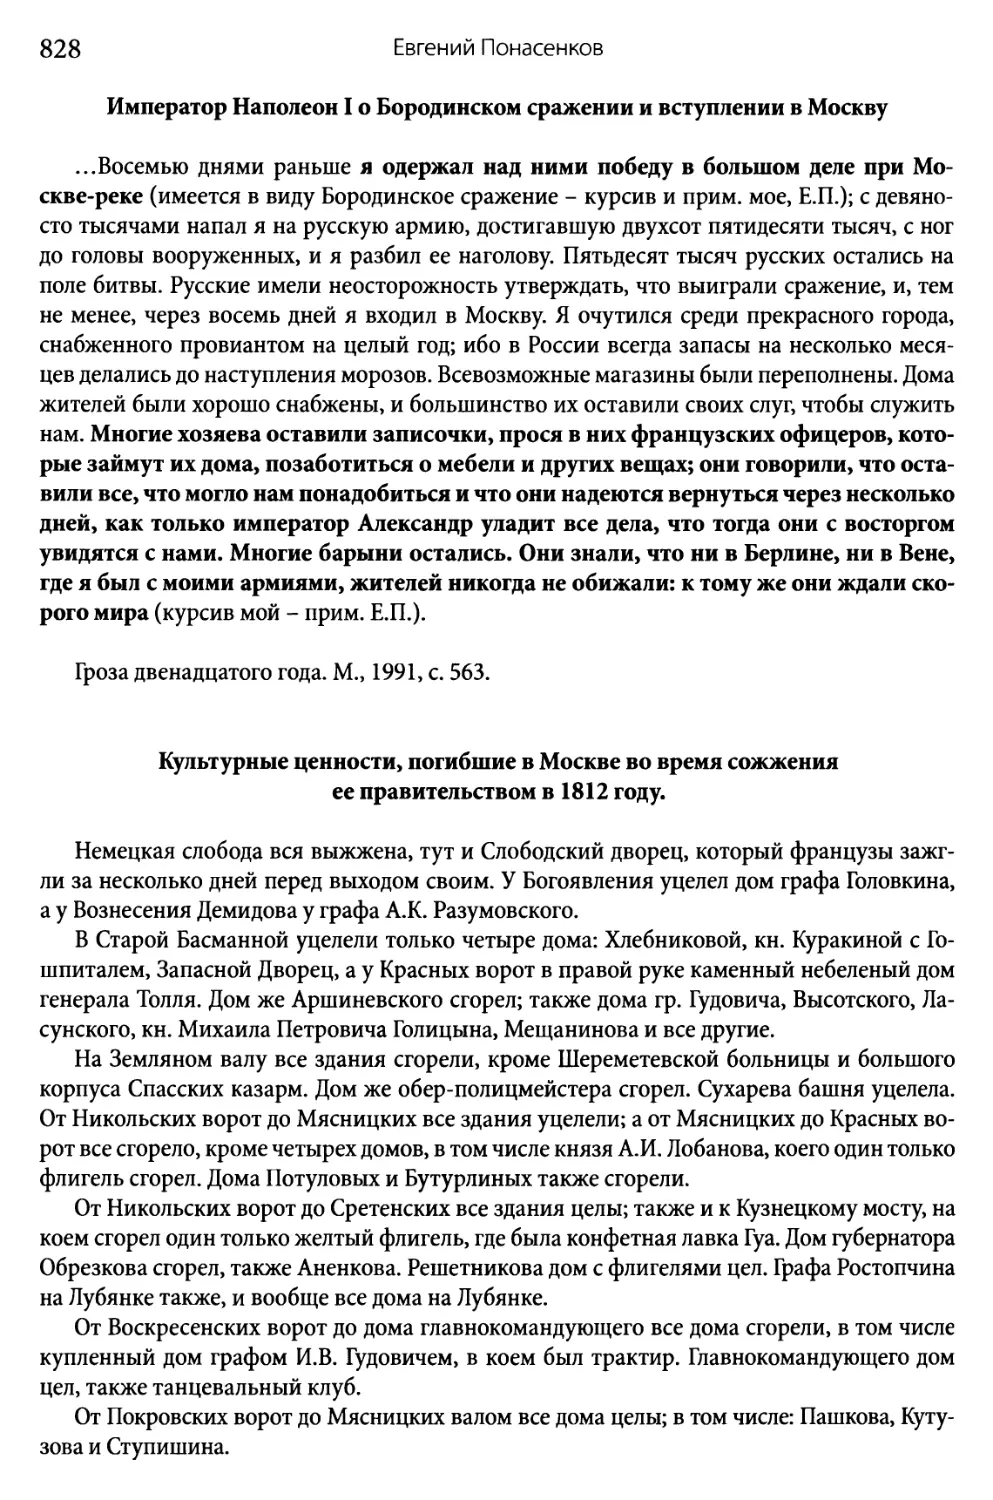 Император Наполеон I о Бородинском сражении и вступлении в Москву
Культурные ценности, погибшие в Москве во время сожжения её правительством в 1812 году